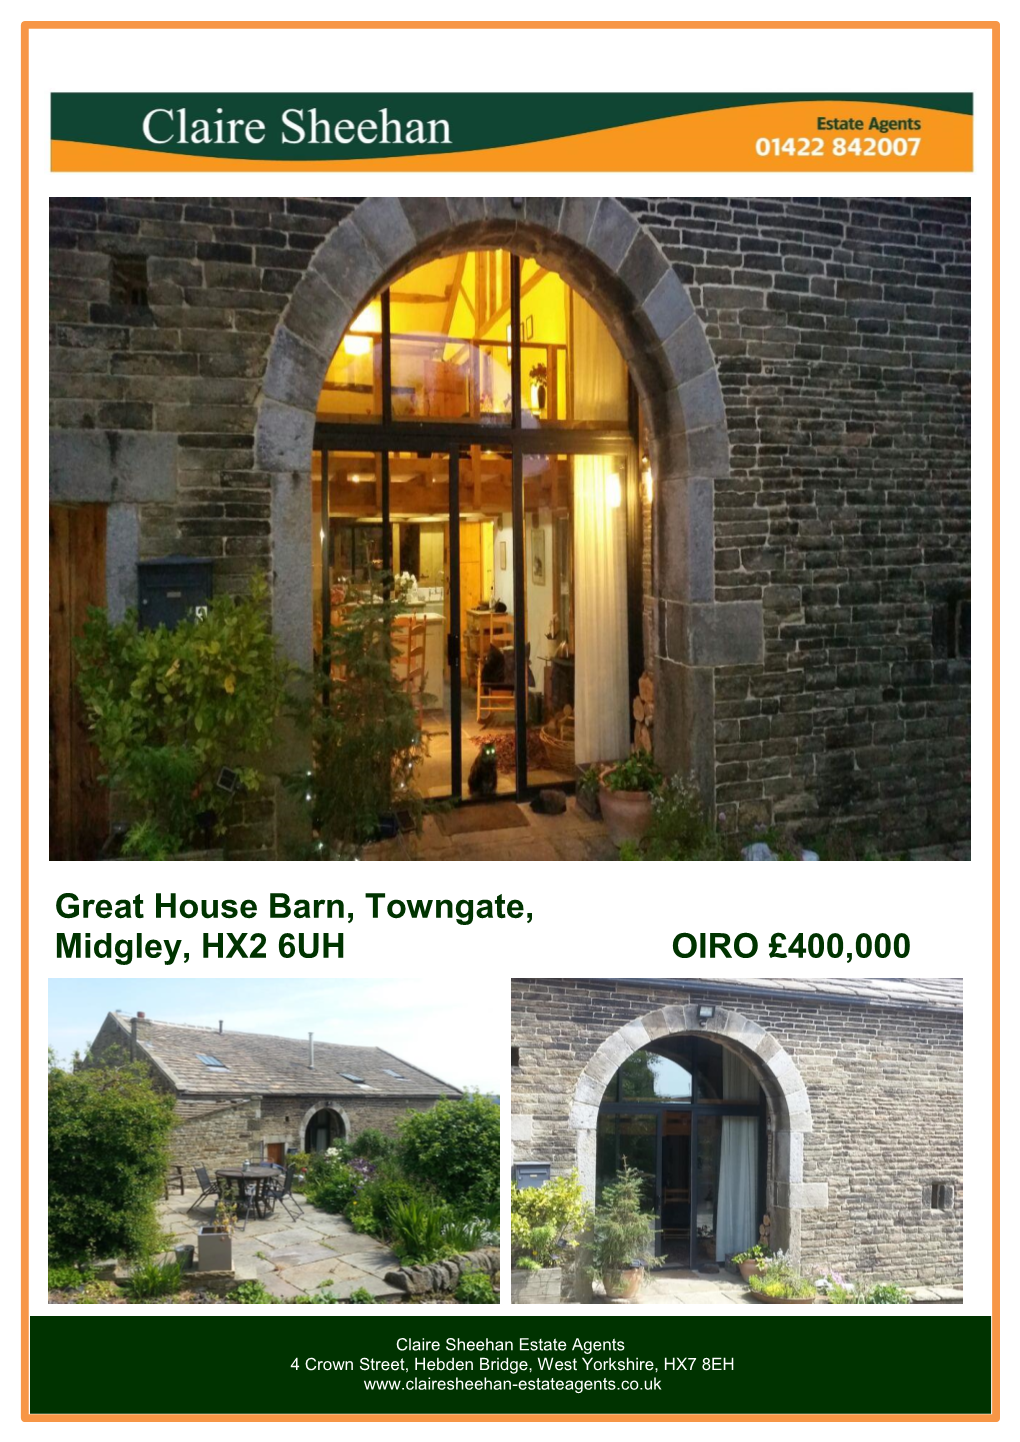 Great House Barn, Towngate, Midgley, HX2 6UH OIRO £400,000